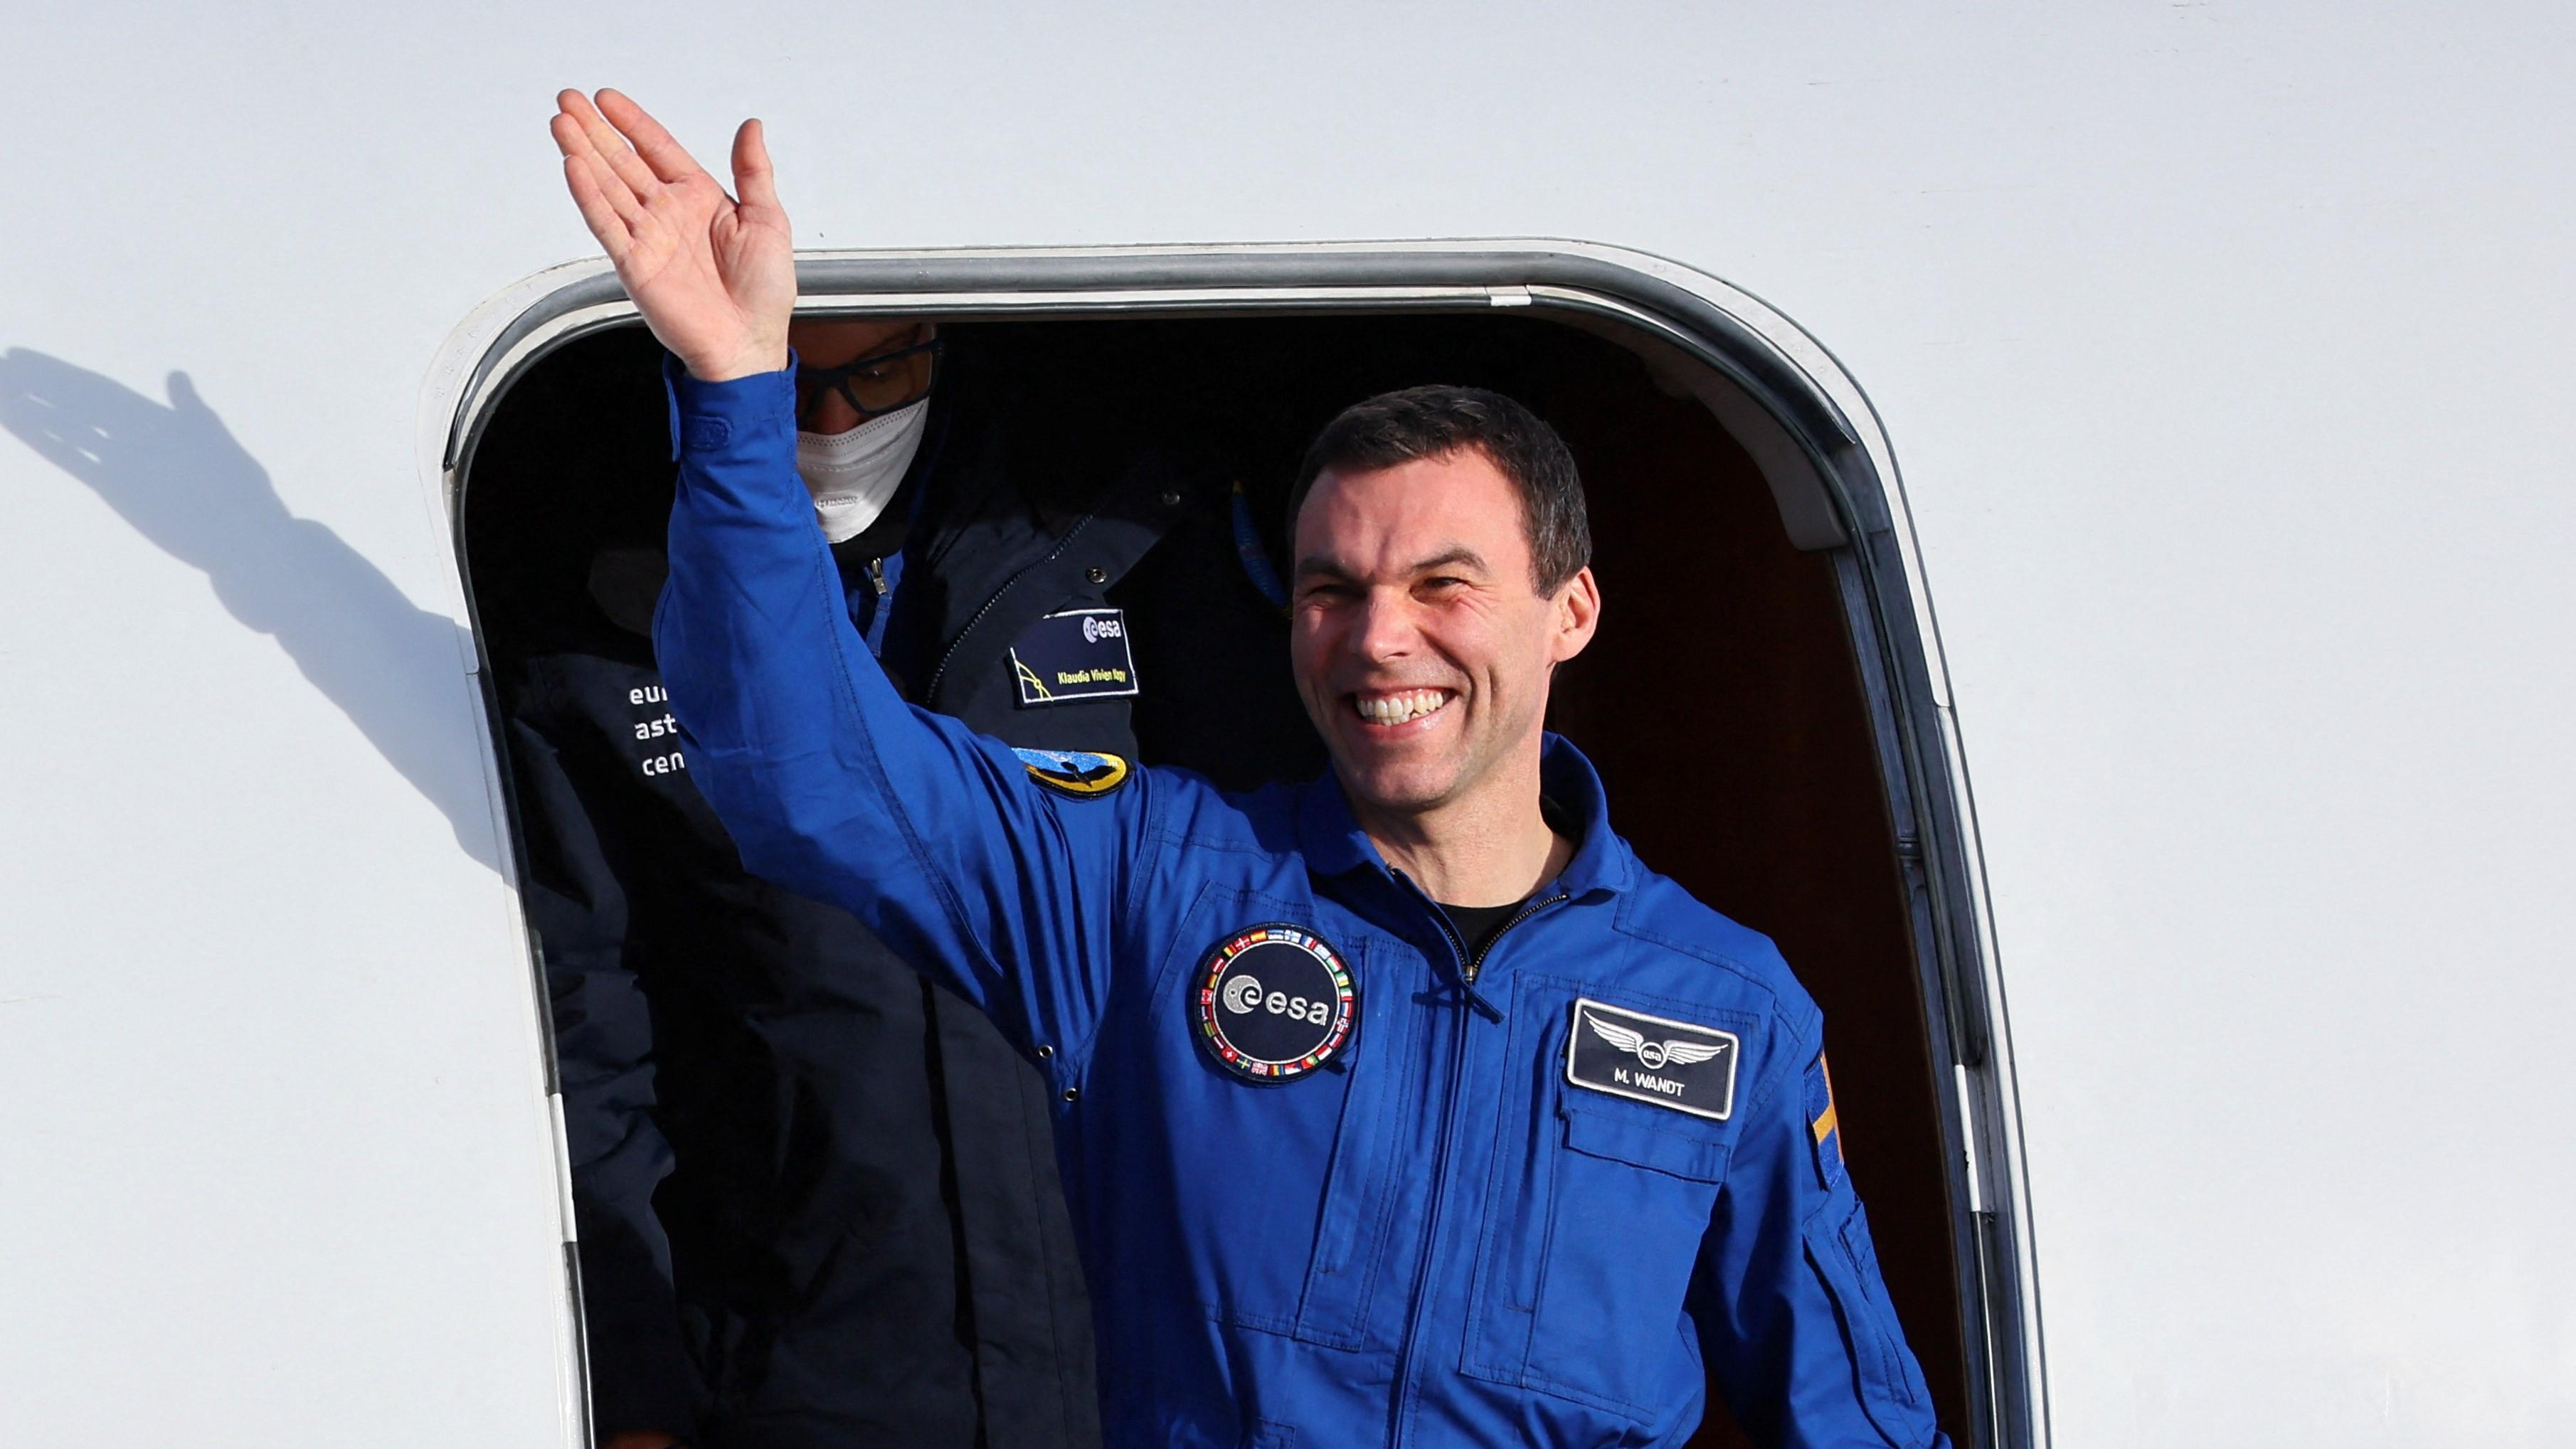 – Det var skönt att få gott kaffe, sade astronauten Marcus Wandt efter ankomsten till jorden igen. Foto: Wolfgang Rattay/Reuters/TT